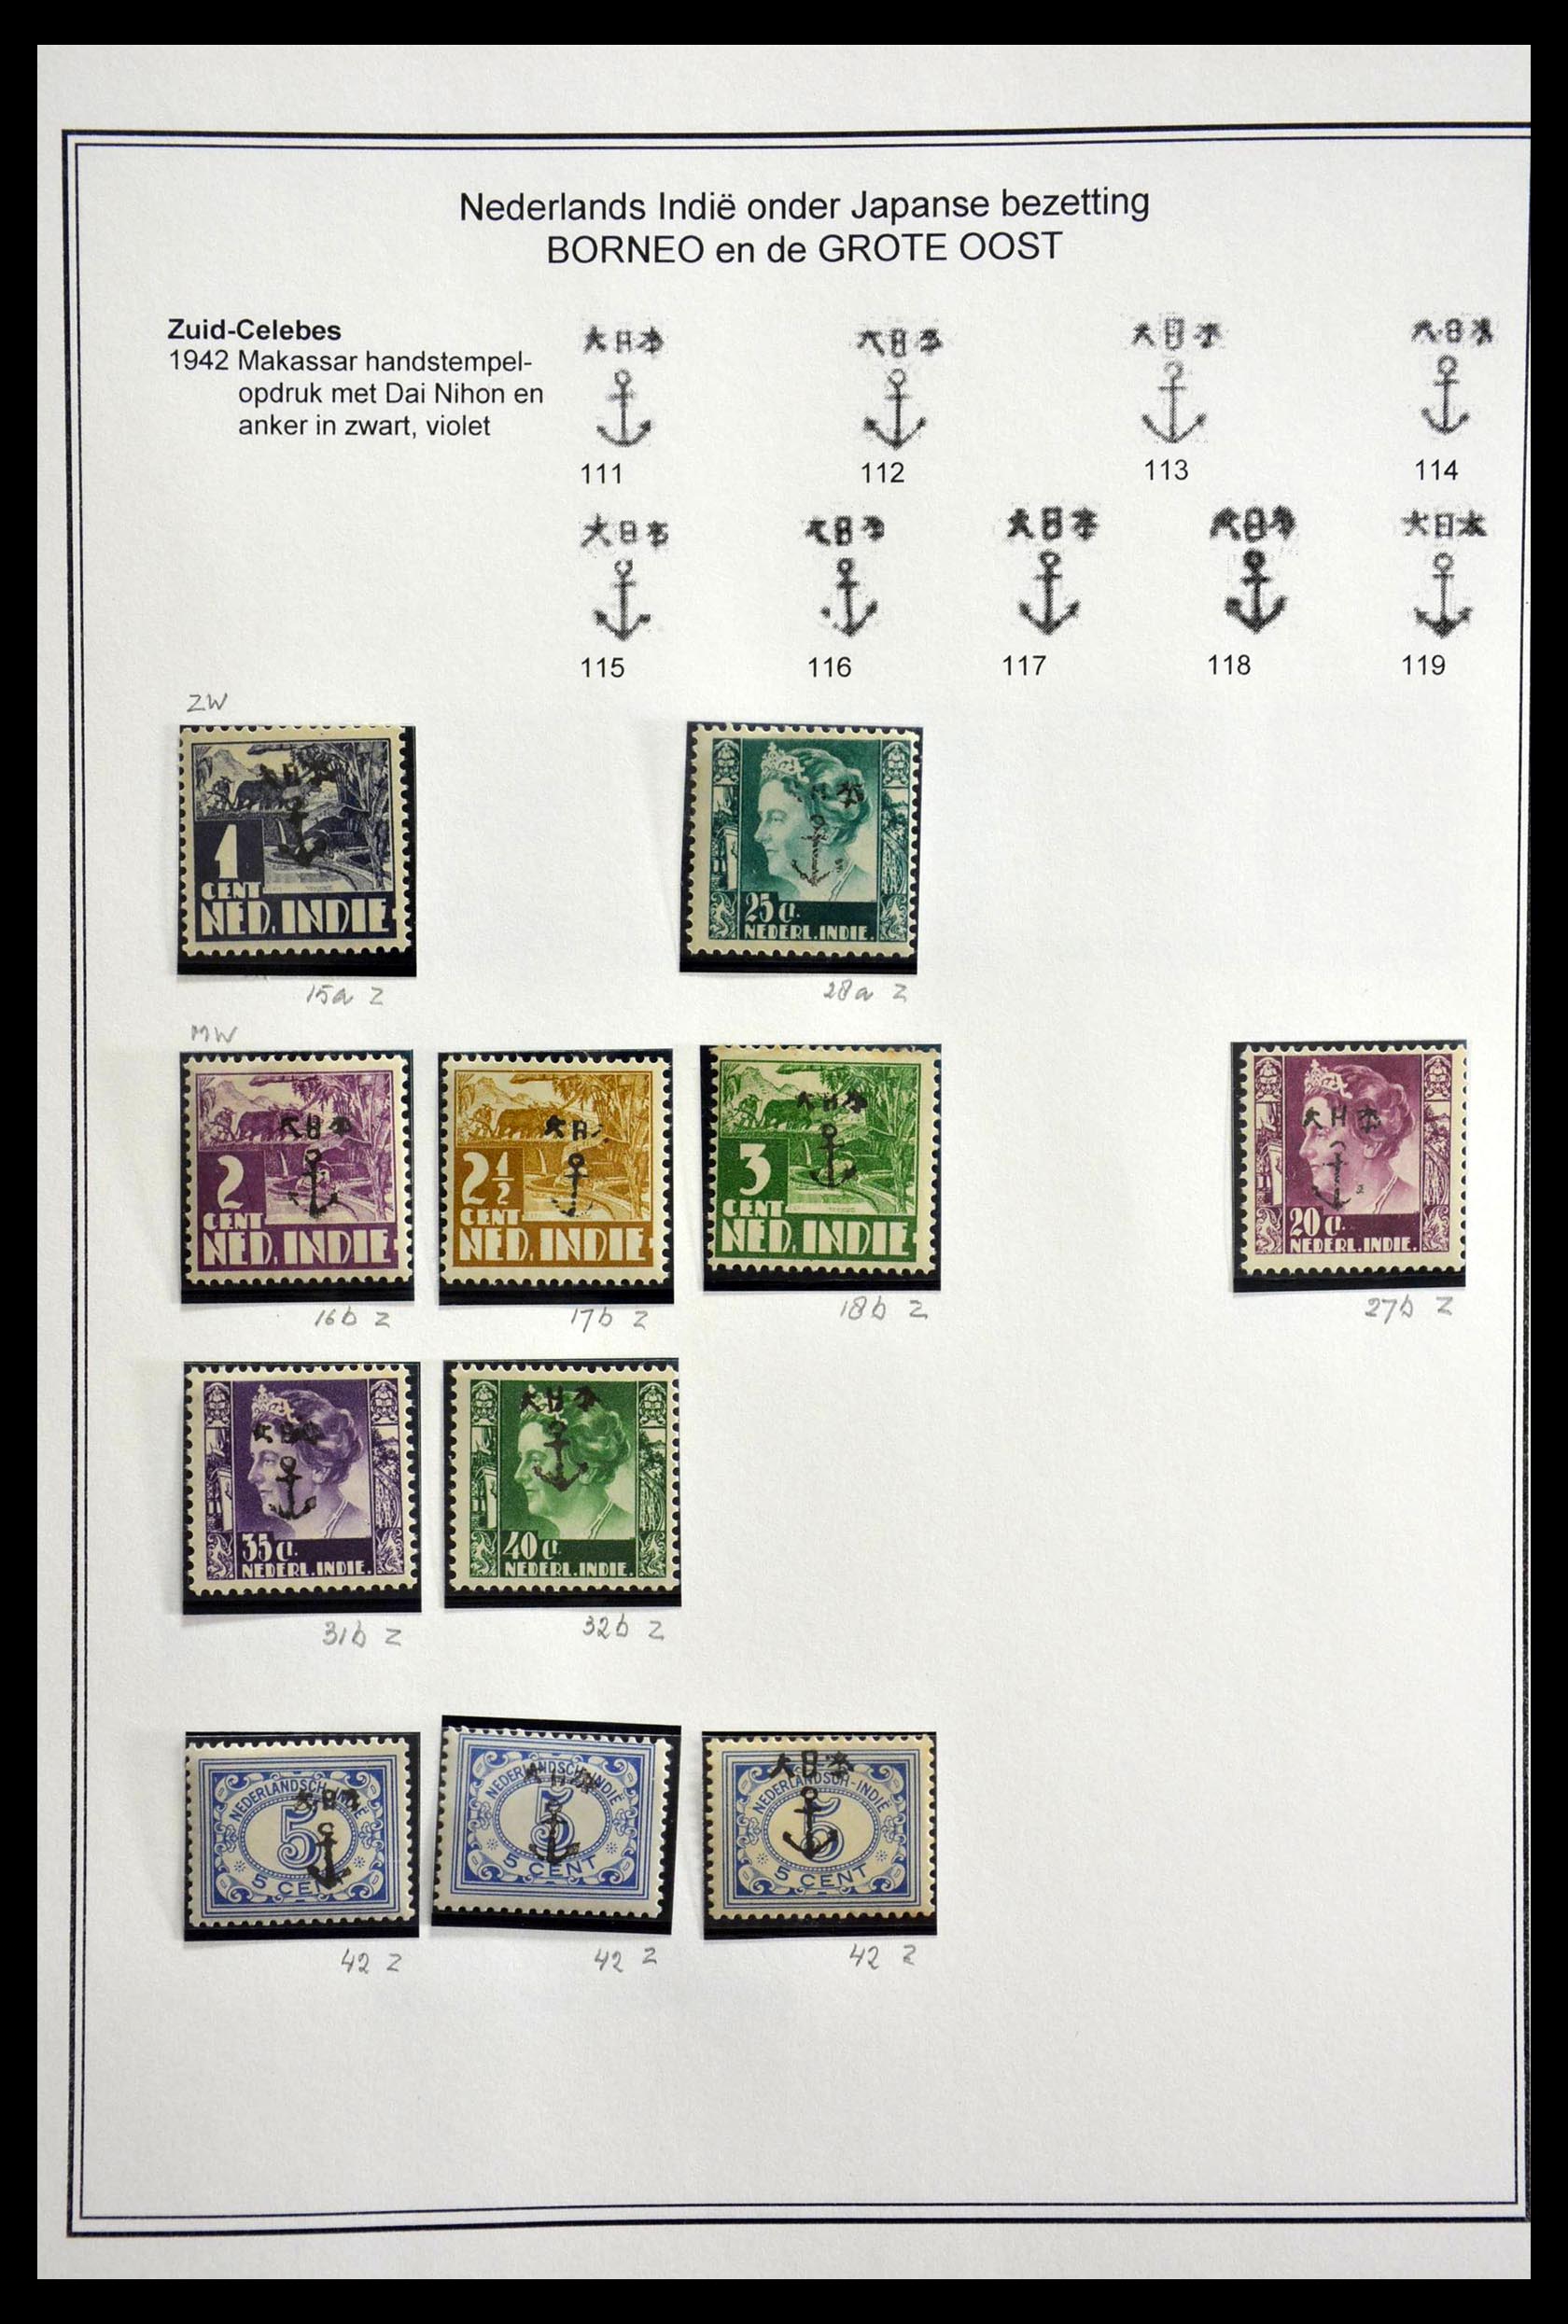 28647 015 - 28647 Japanse bezetting en interimperiode Nederlands Indië 1942-1954.